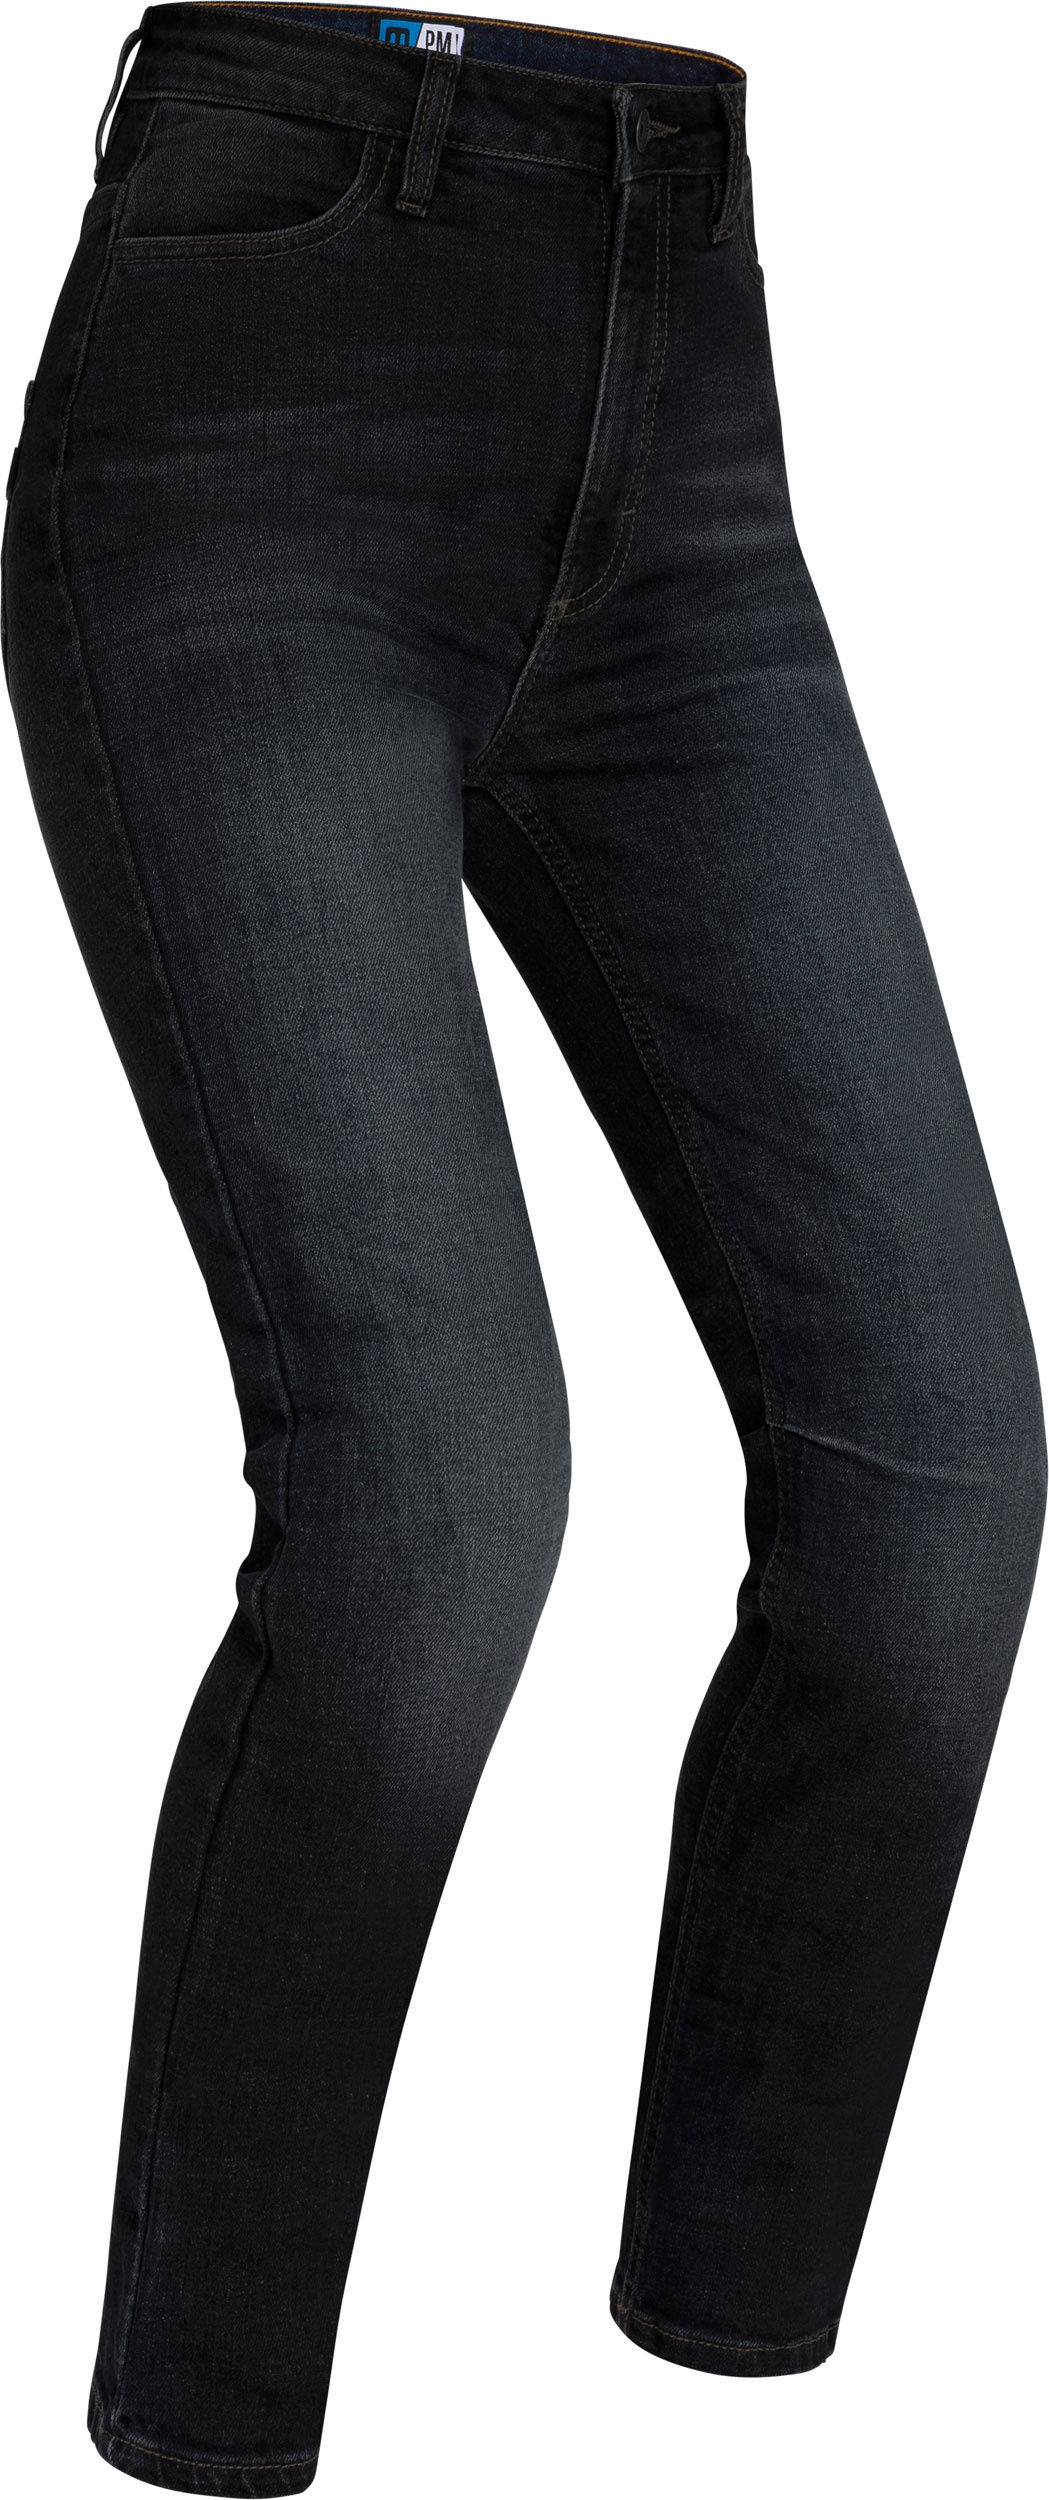 PMJ Sara, jeans femmes - Noir - 38